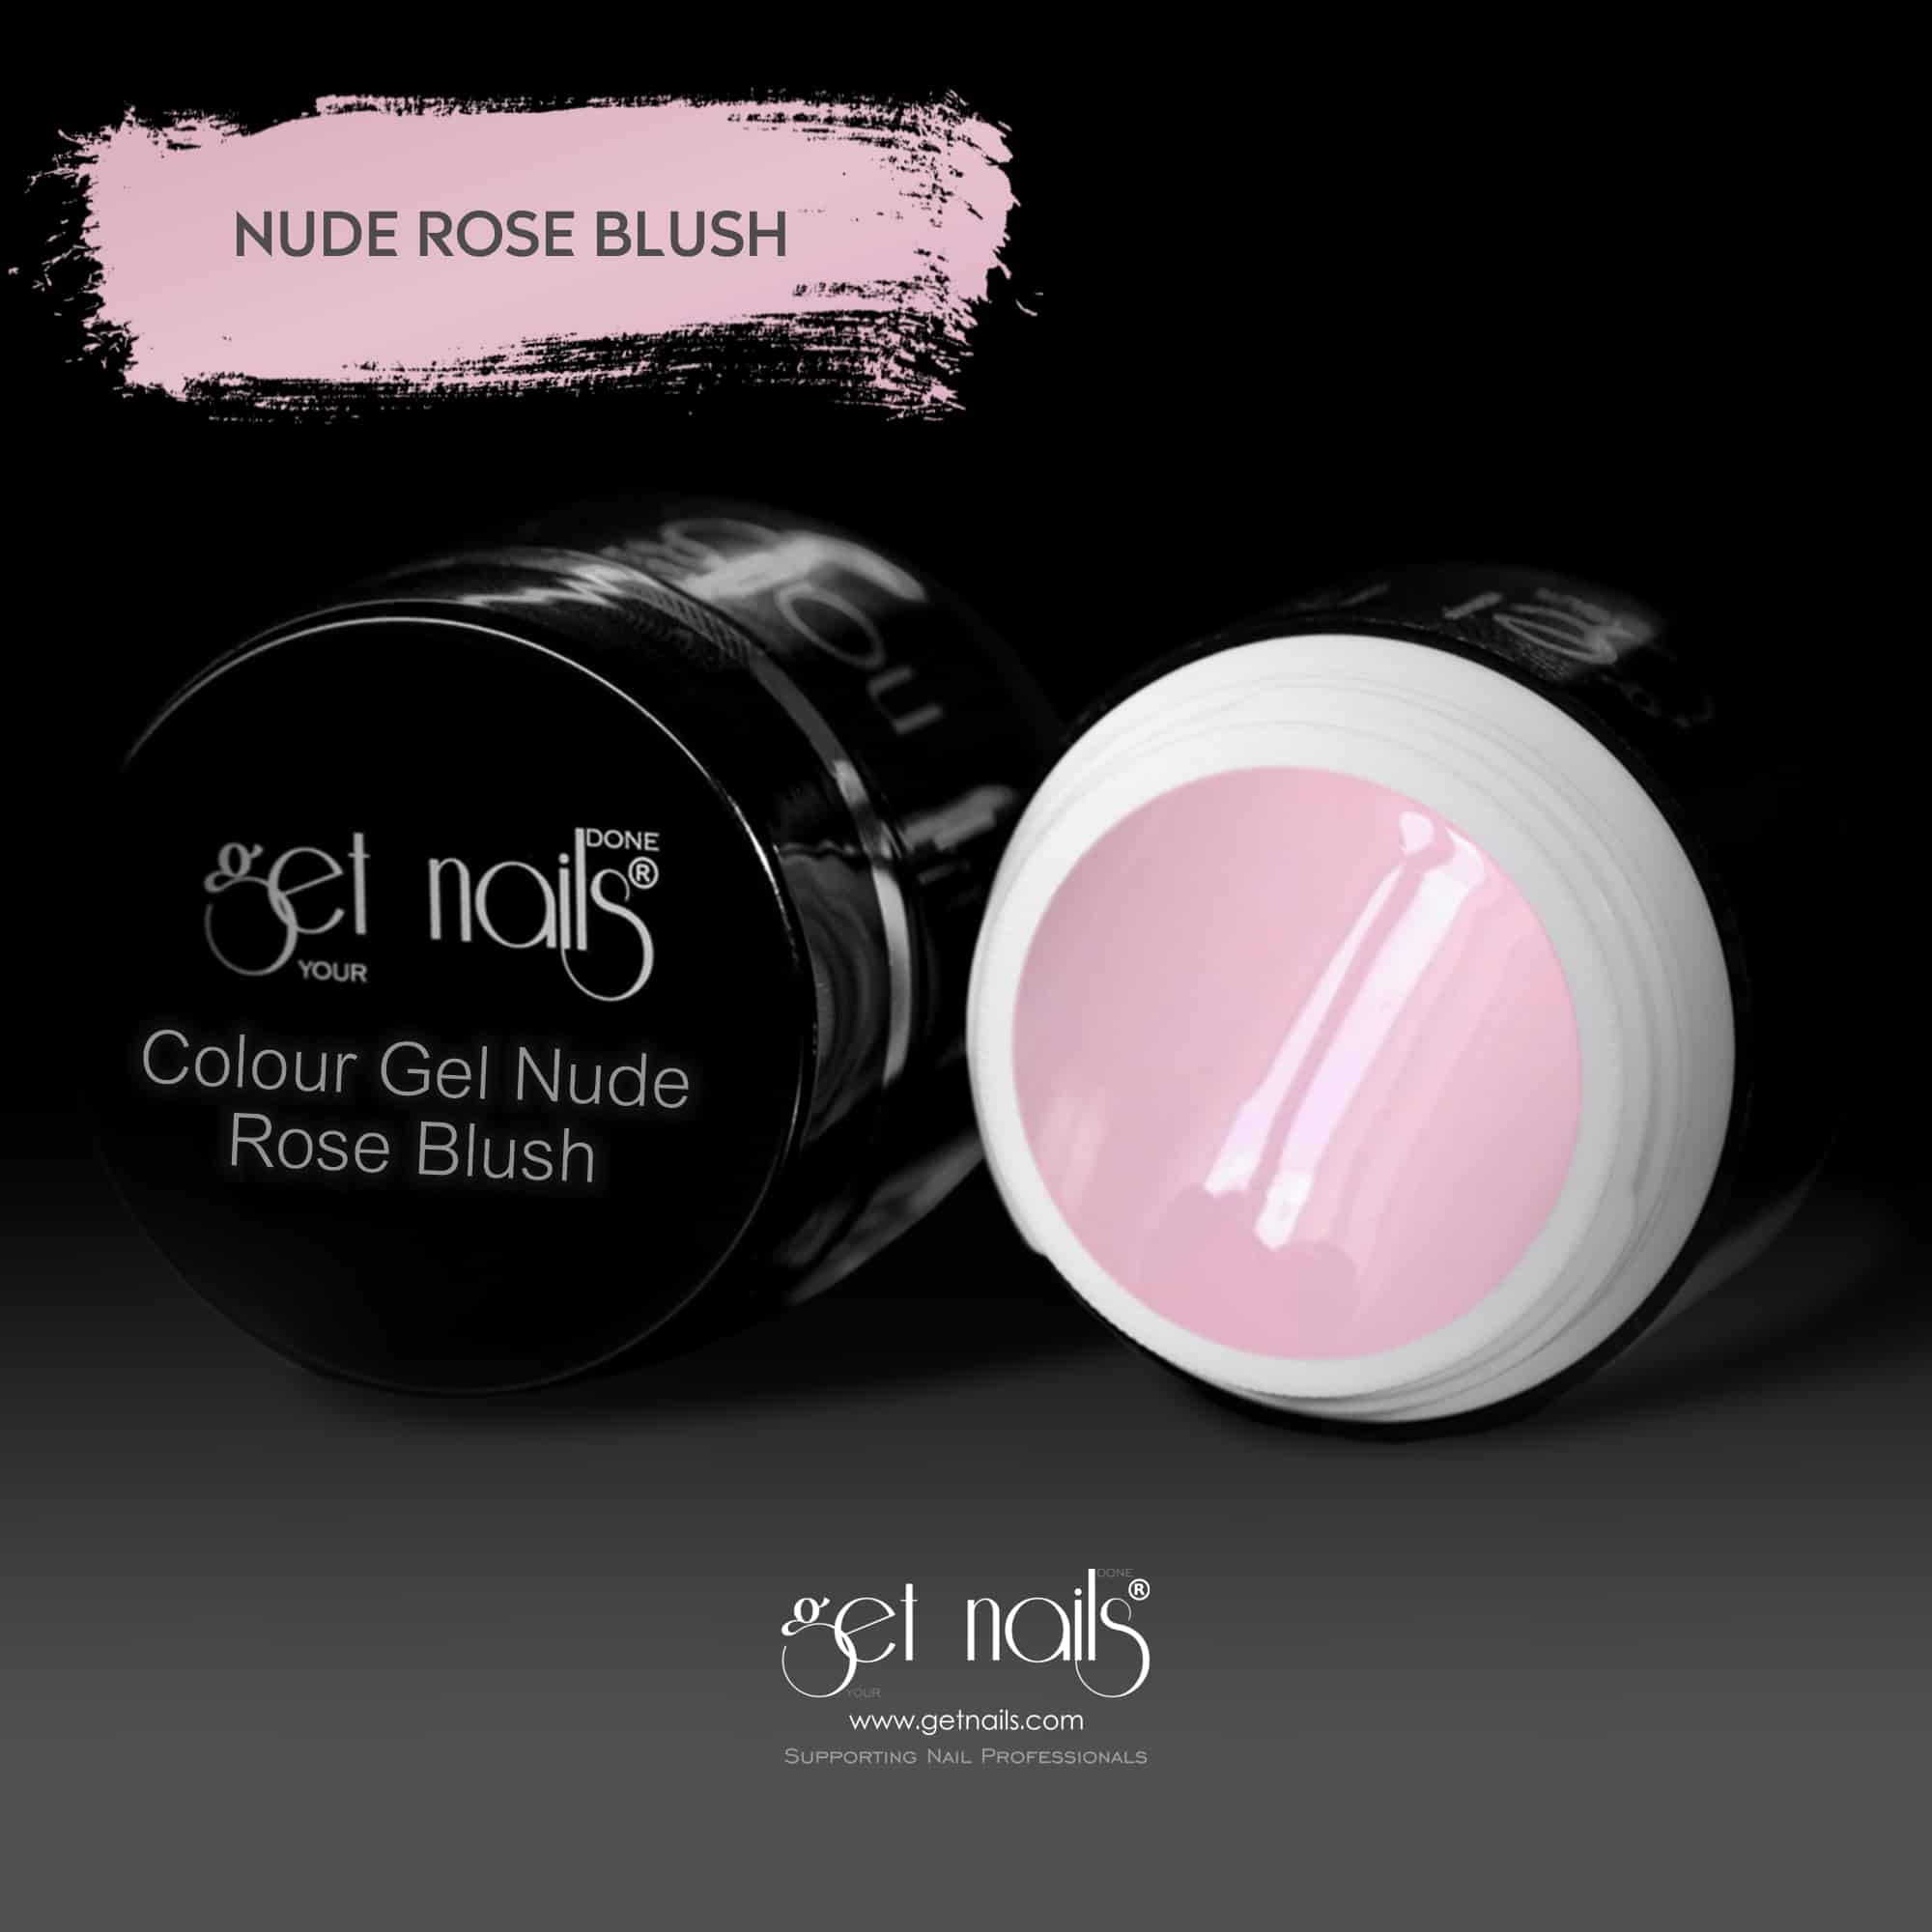 Get Nails Austria - Color Gel Nude Rose Blush 5g